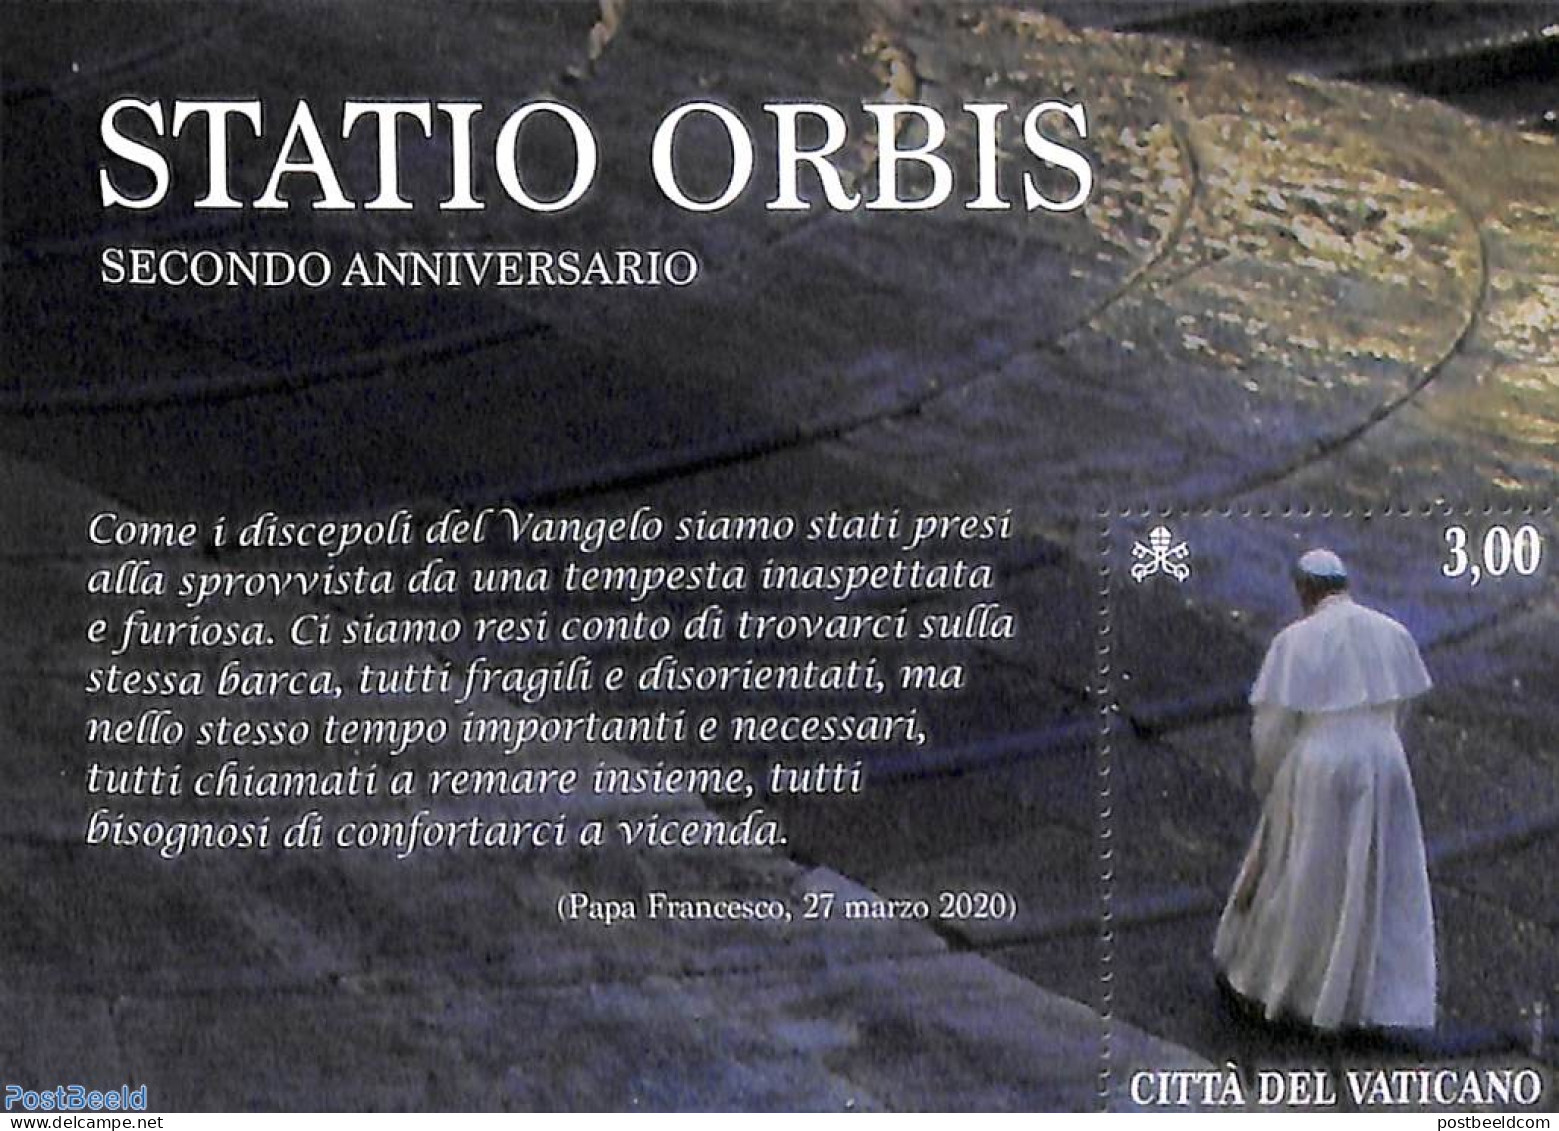 Vatican 2022 Statio Orbis S/s, Mint NH, Religion - Pope - Ungebraucht